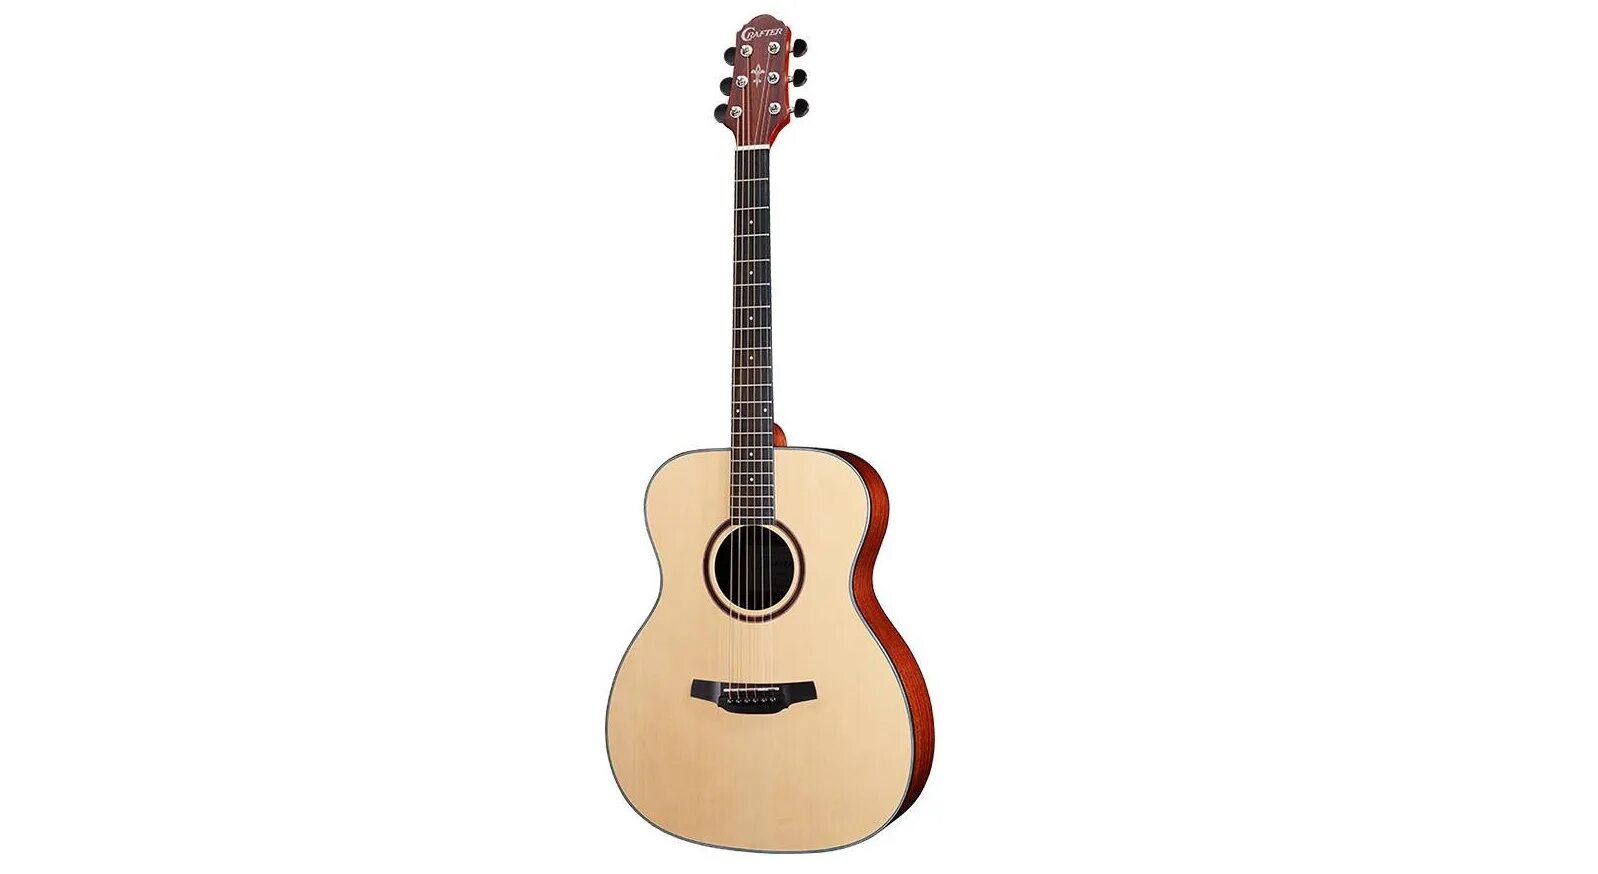 Акустическая гитара Crafter HT-250. Crafter HT-250 акустическая гитара цена. Crafter HT-250 цена. Crafter HT-250/N обзоры.